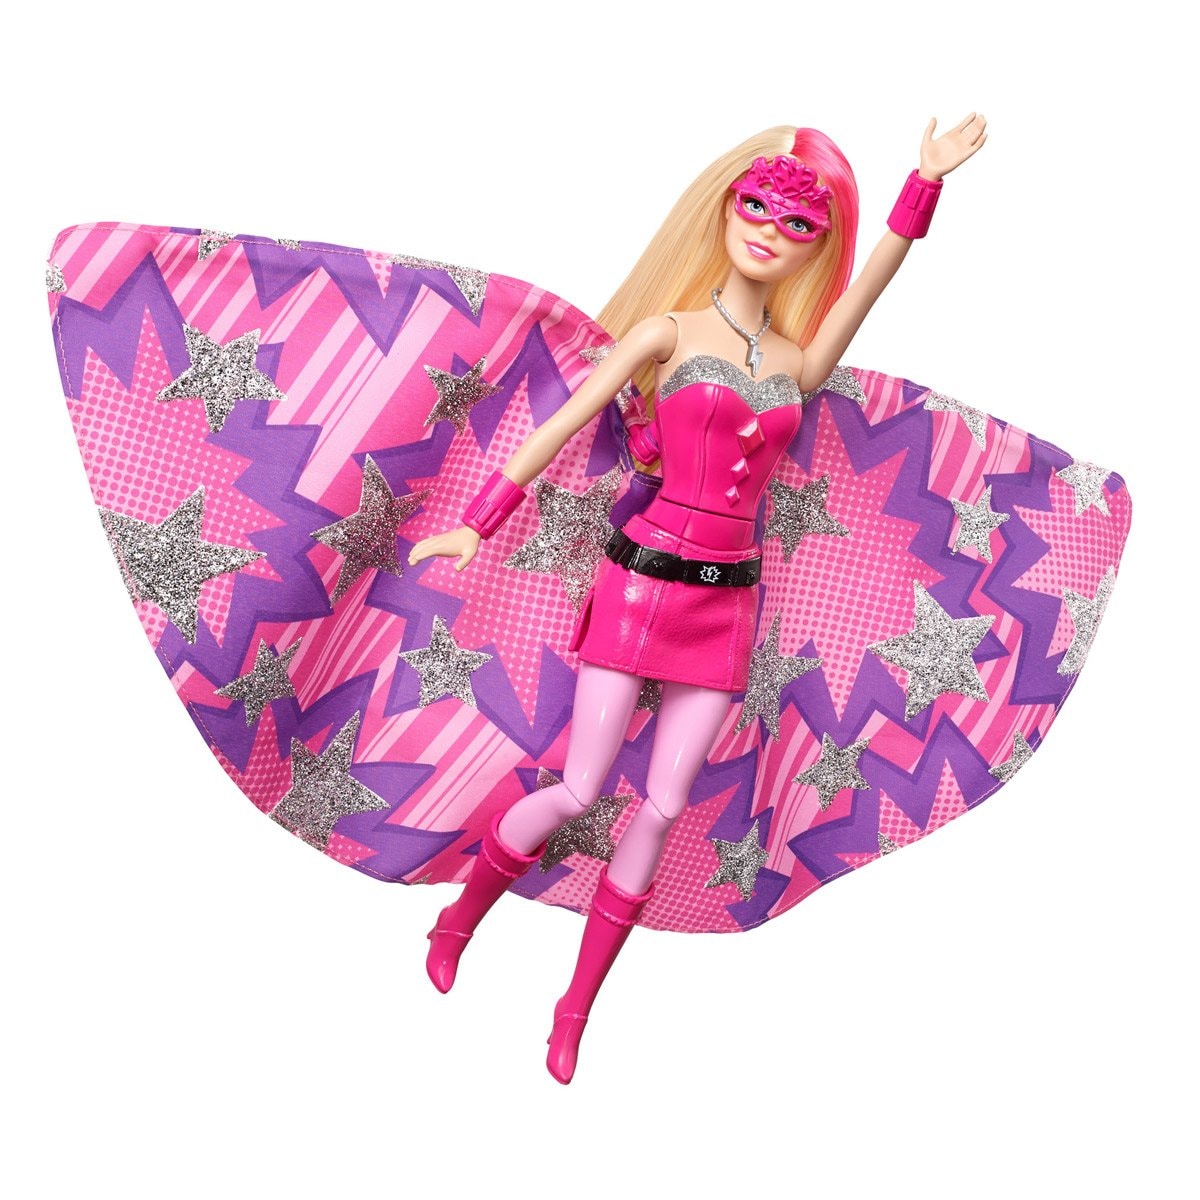 Barbie Heroe Best Sale, UP TO OFF | www.apmusicales.com